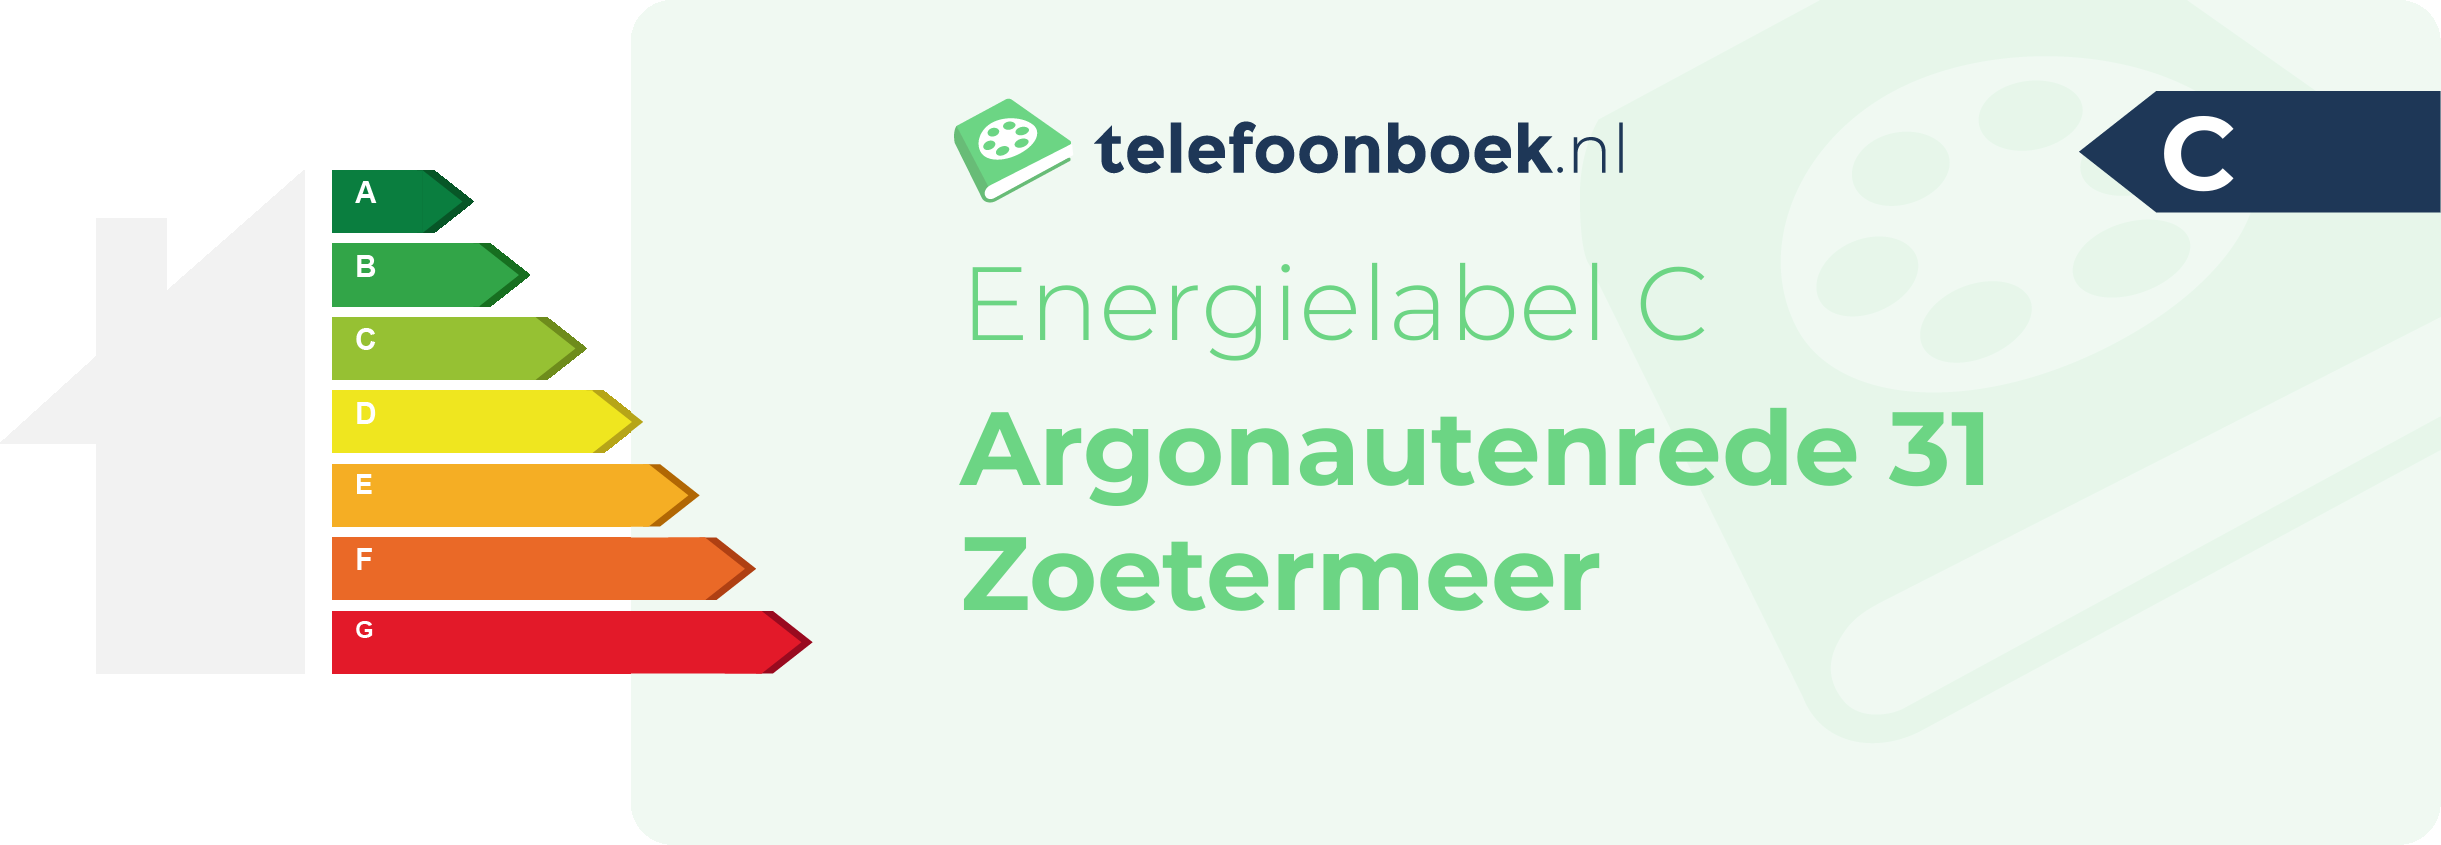 Energielabel Argonautenrede 31 Zoetermeer